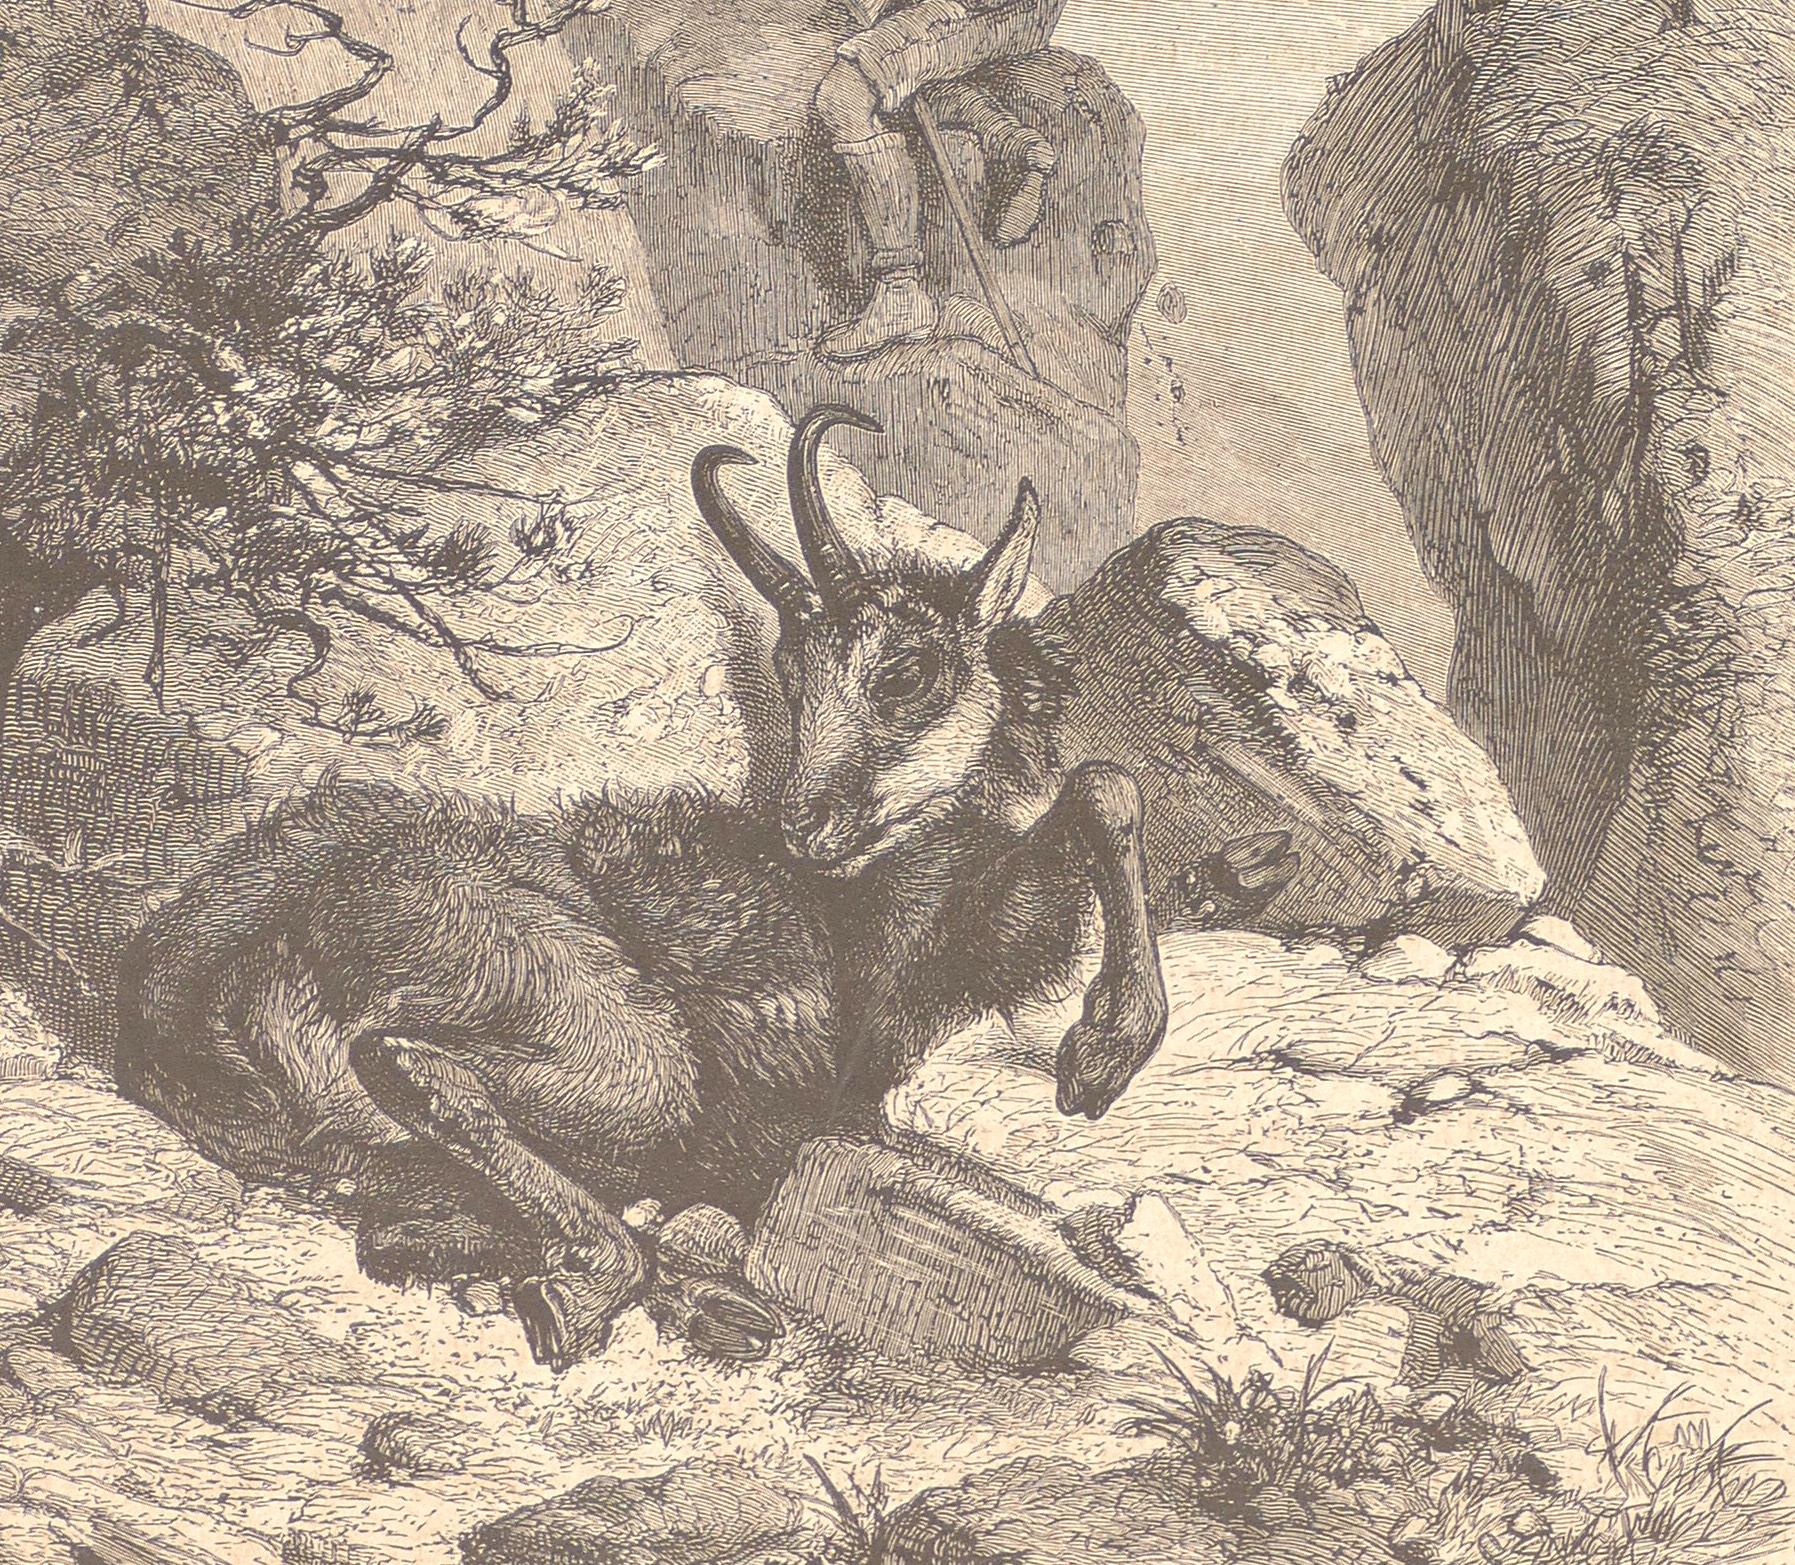 Original Lithographie „A Lying Animal“ von F. Specht, 1880 (Naturalismus), Print, von Friedrich Specht